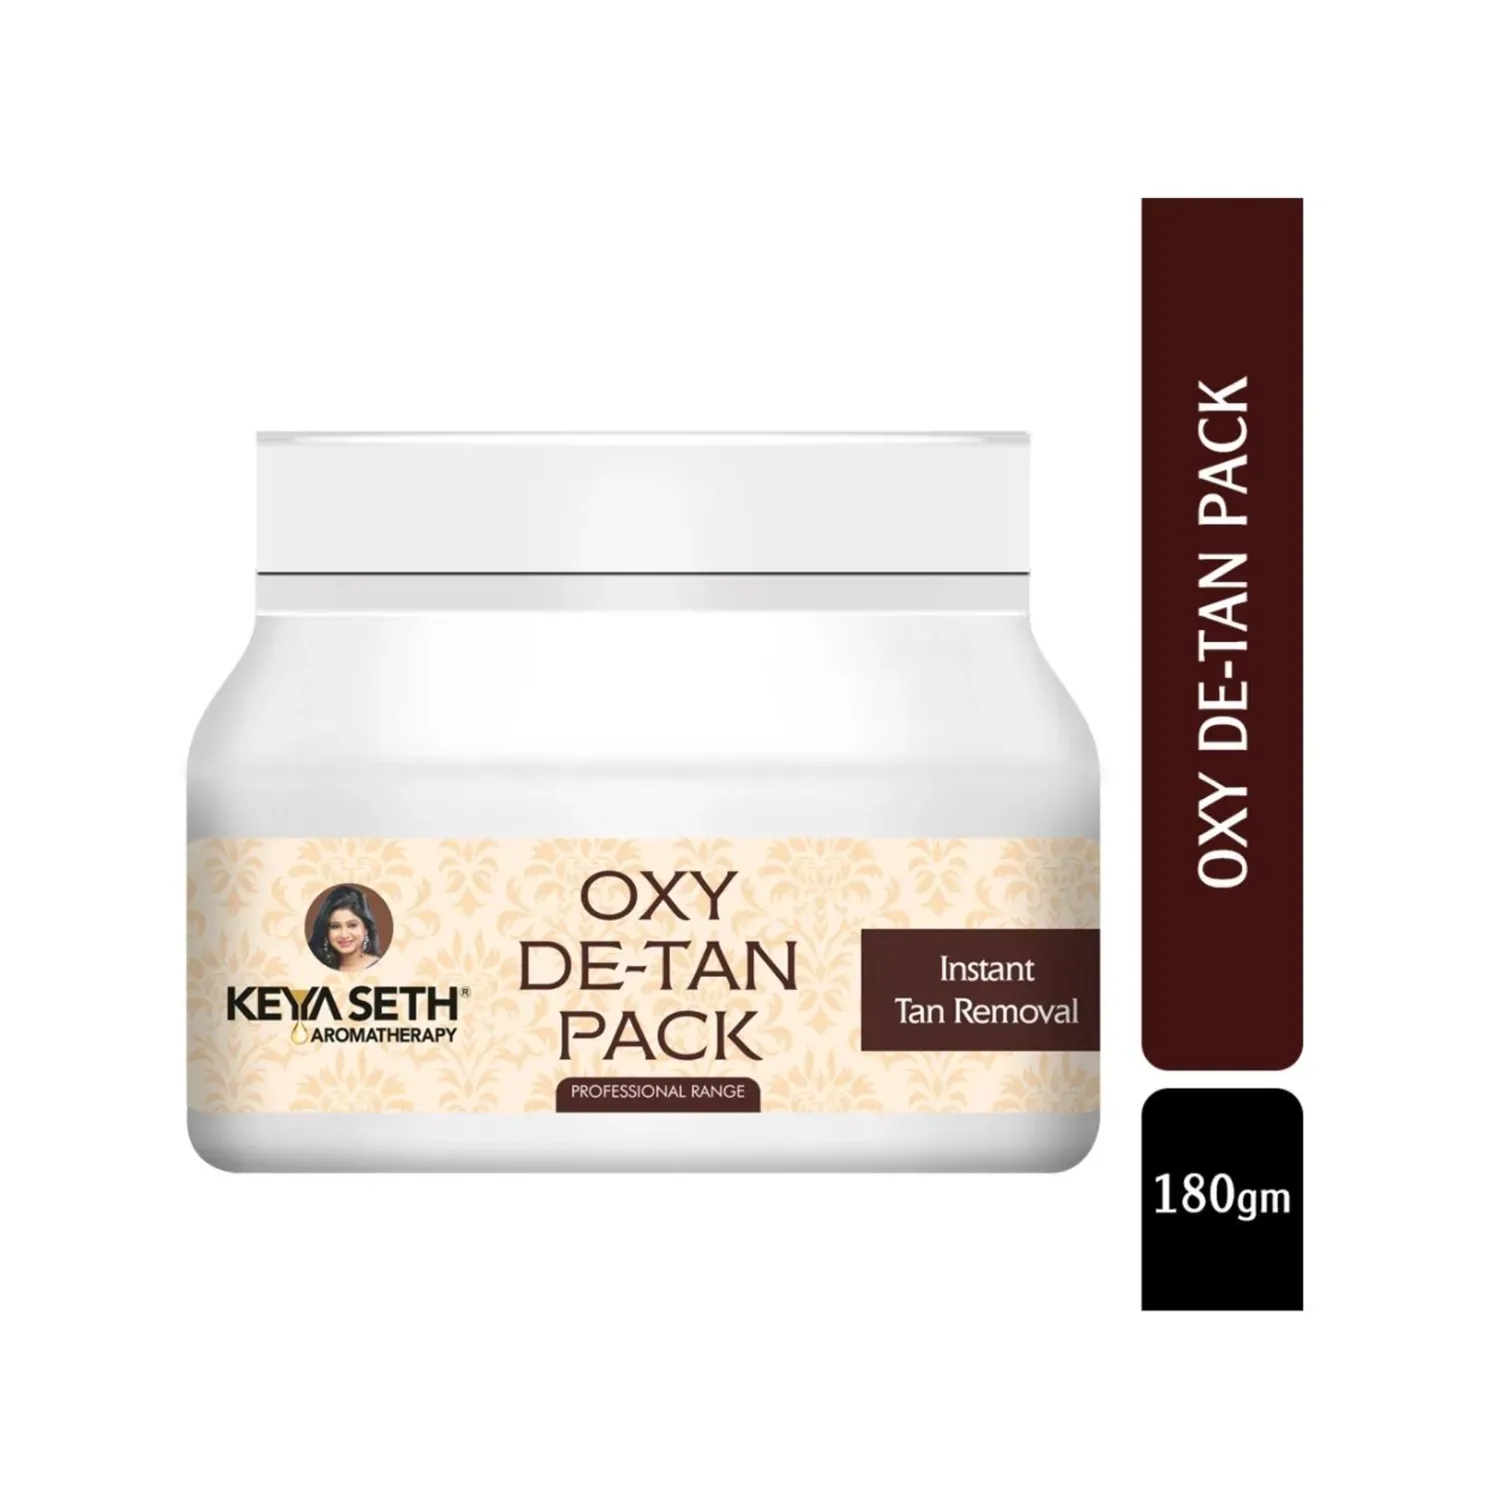 Keya Seth Aromatherapy Instant Tan Removal Oxy De Tan Pack (180g)